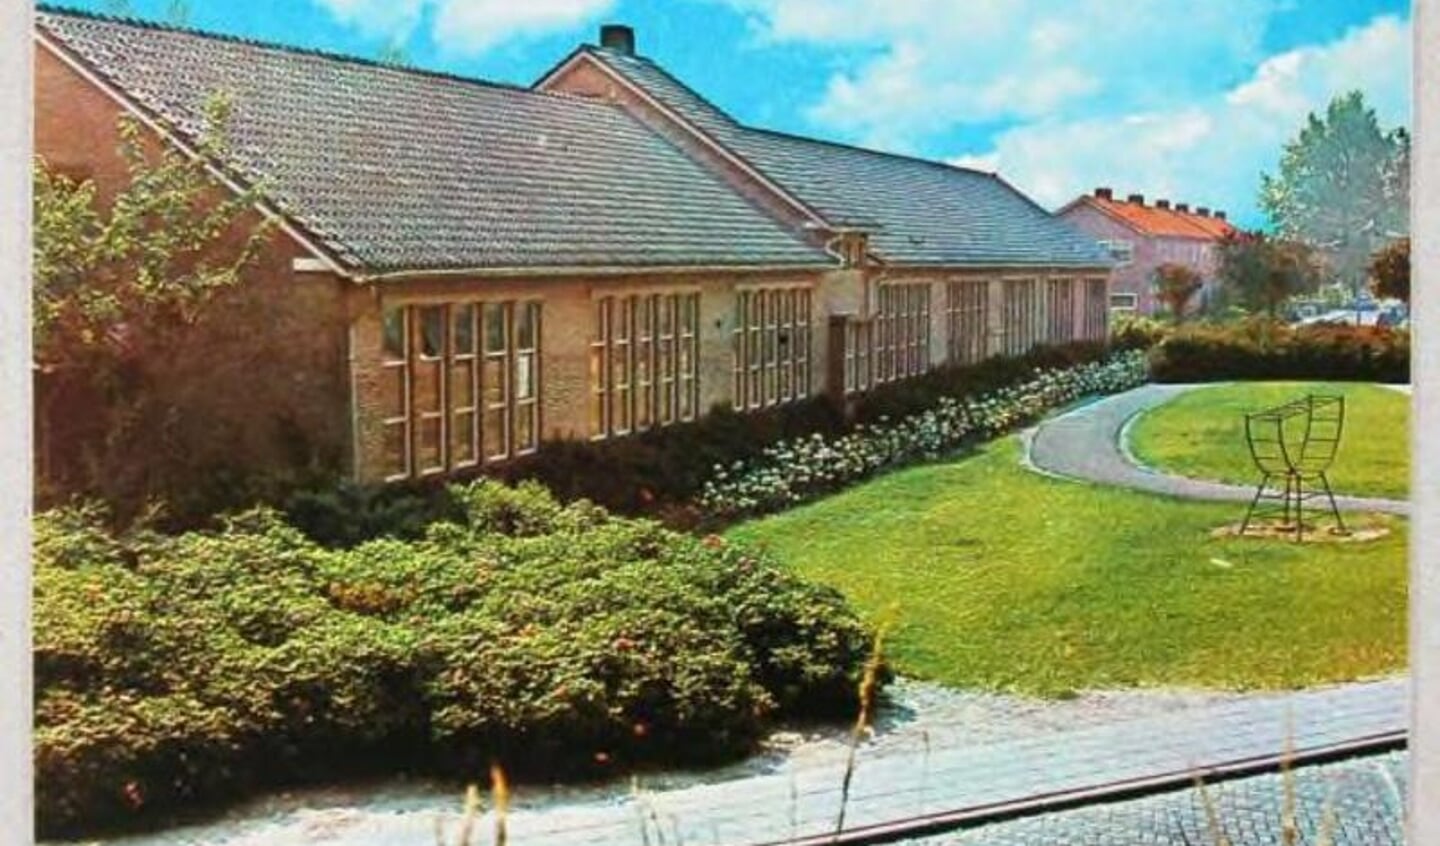 Sint Jozefschool in 1970.